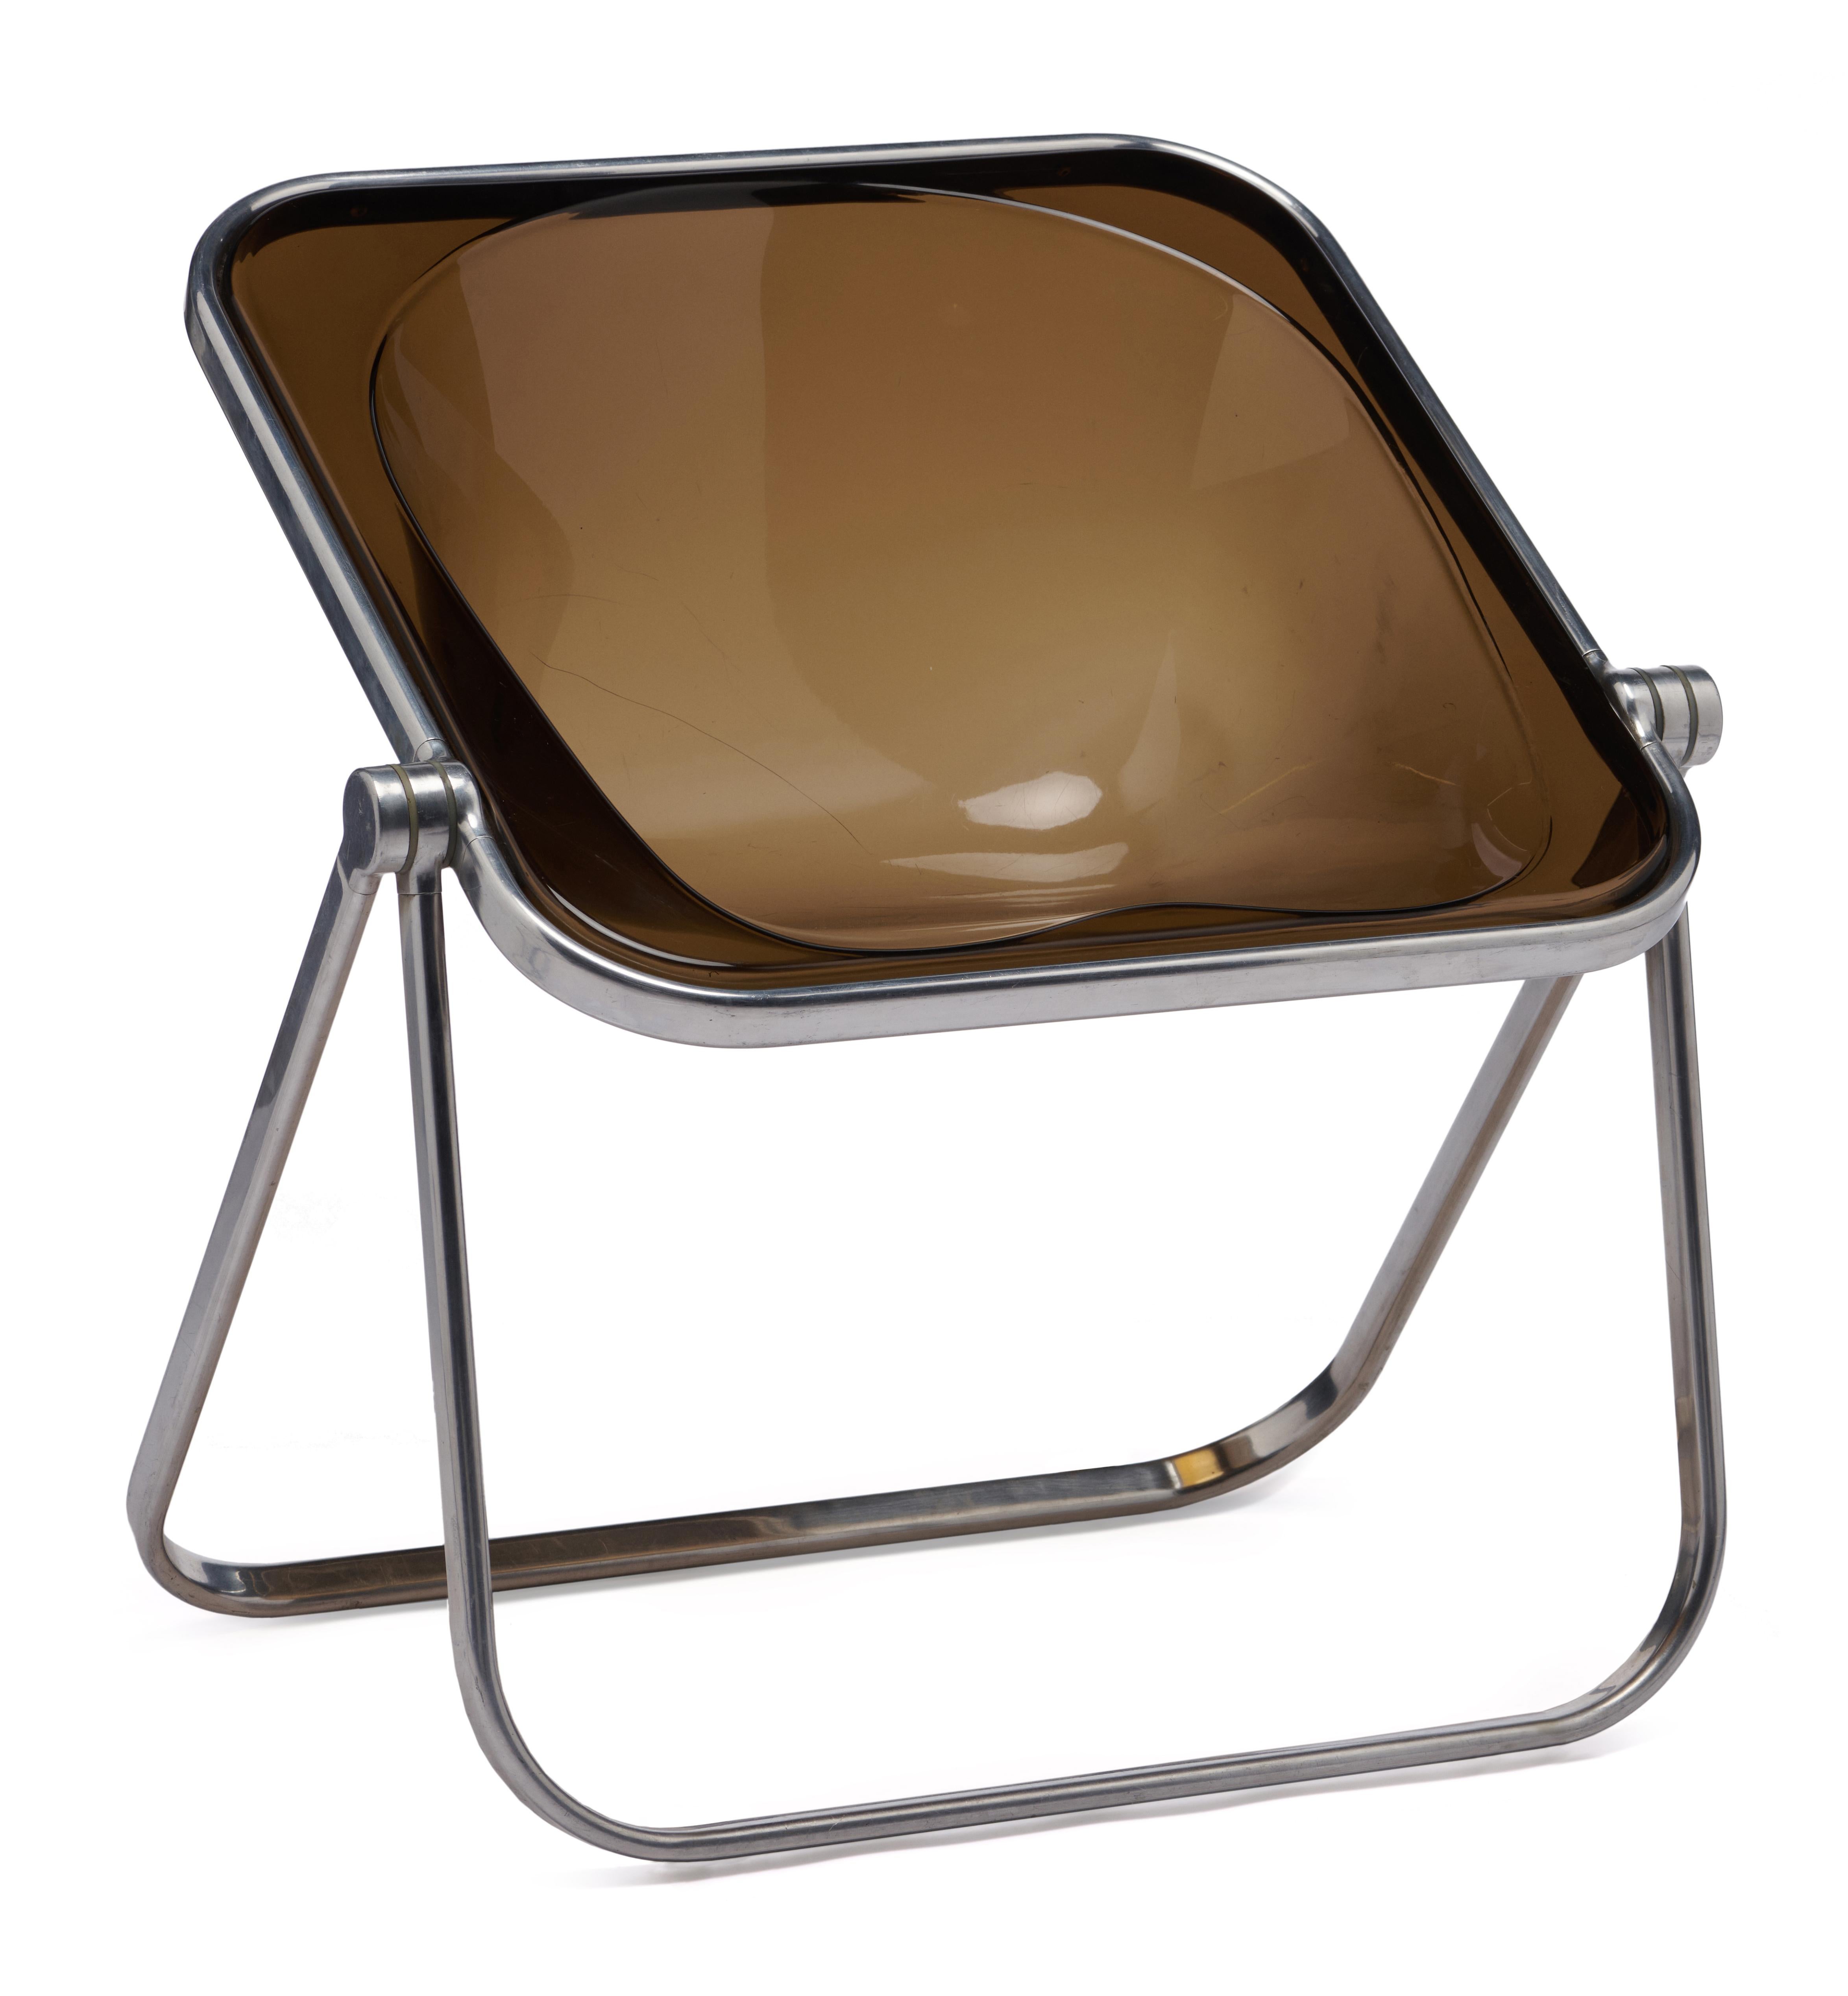 Plona wurde 1970 von Giancarlo Piretti entworfen und ist ein klappbarer und stapelbarer Sessel. Die solide Rohrstruktur besteht aus einer polierten, rostfreien Aluminiumlegierung, die Scharniere sind aus Leichtmetalldruckguss. 

Guter